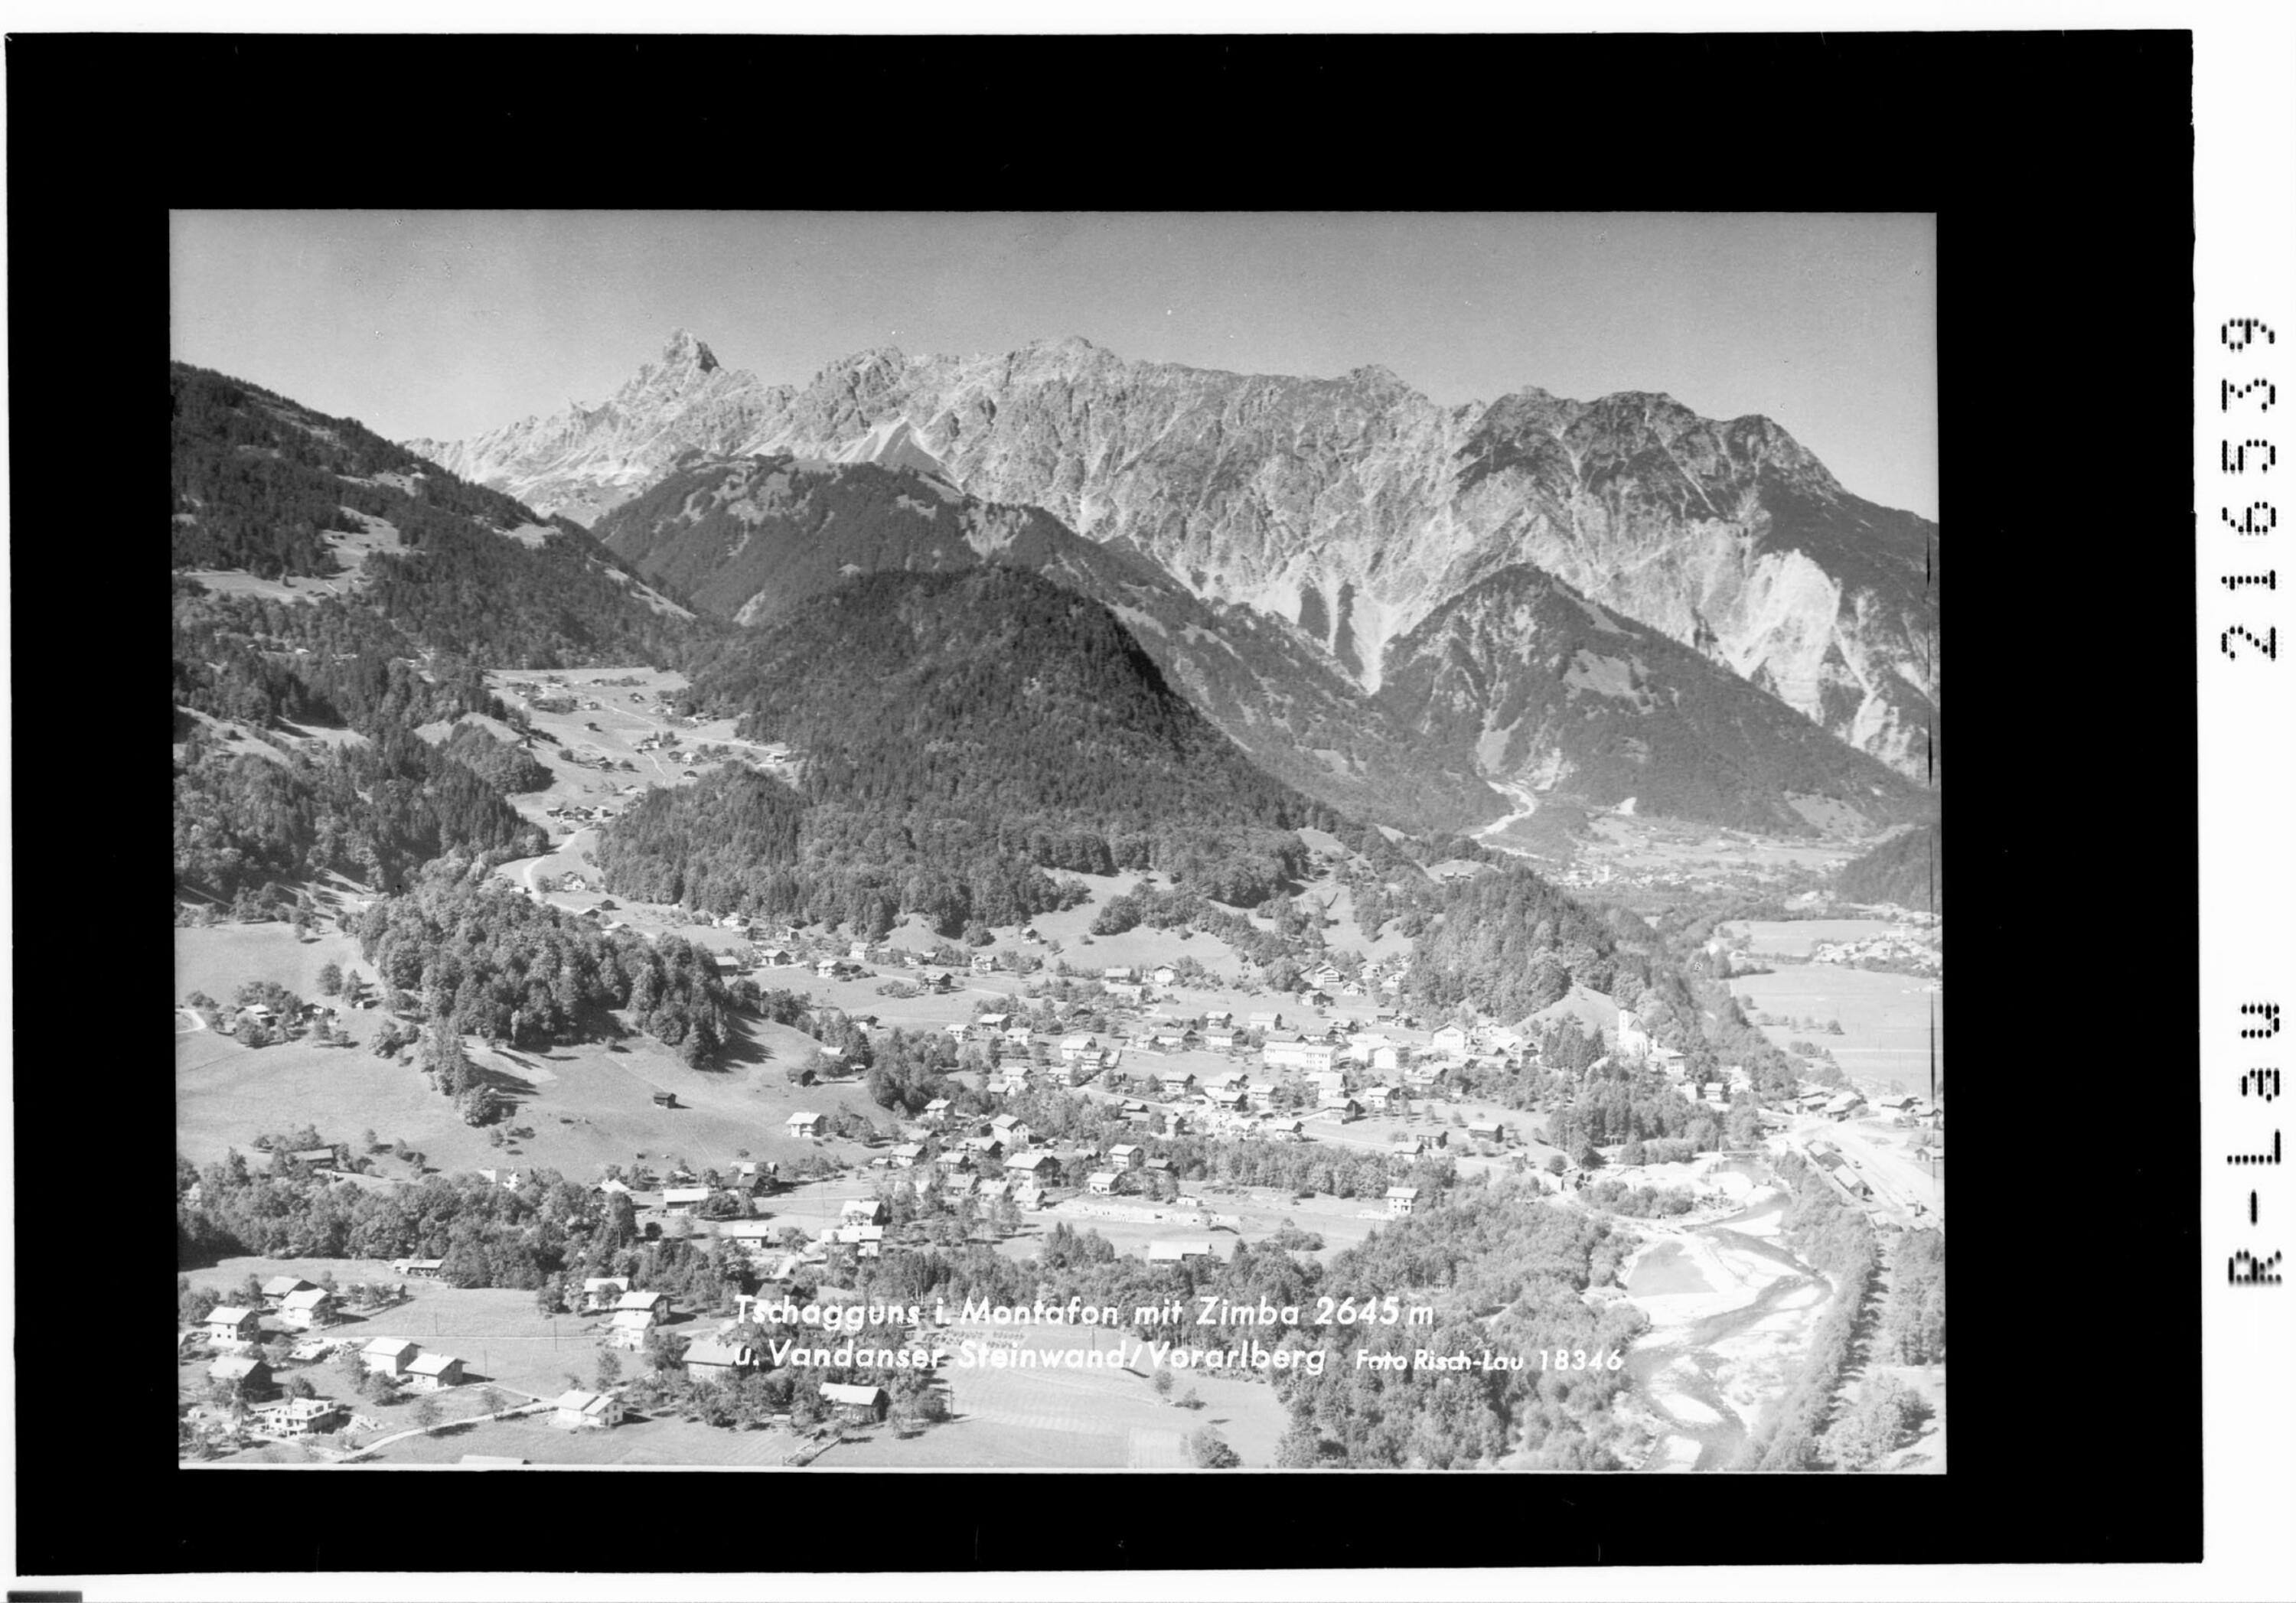 Tschagguns im Montafon mit Zimba 2645 m und Vandanser Steinwand / Vorarlberg></div>


    <hr>
    <div class=